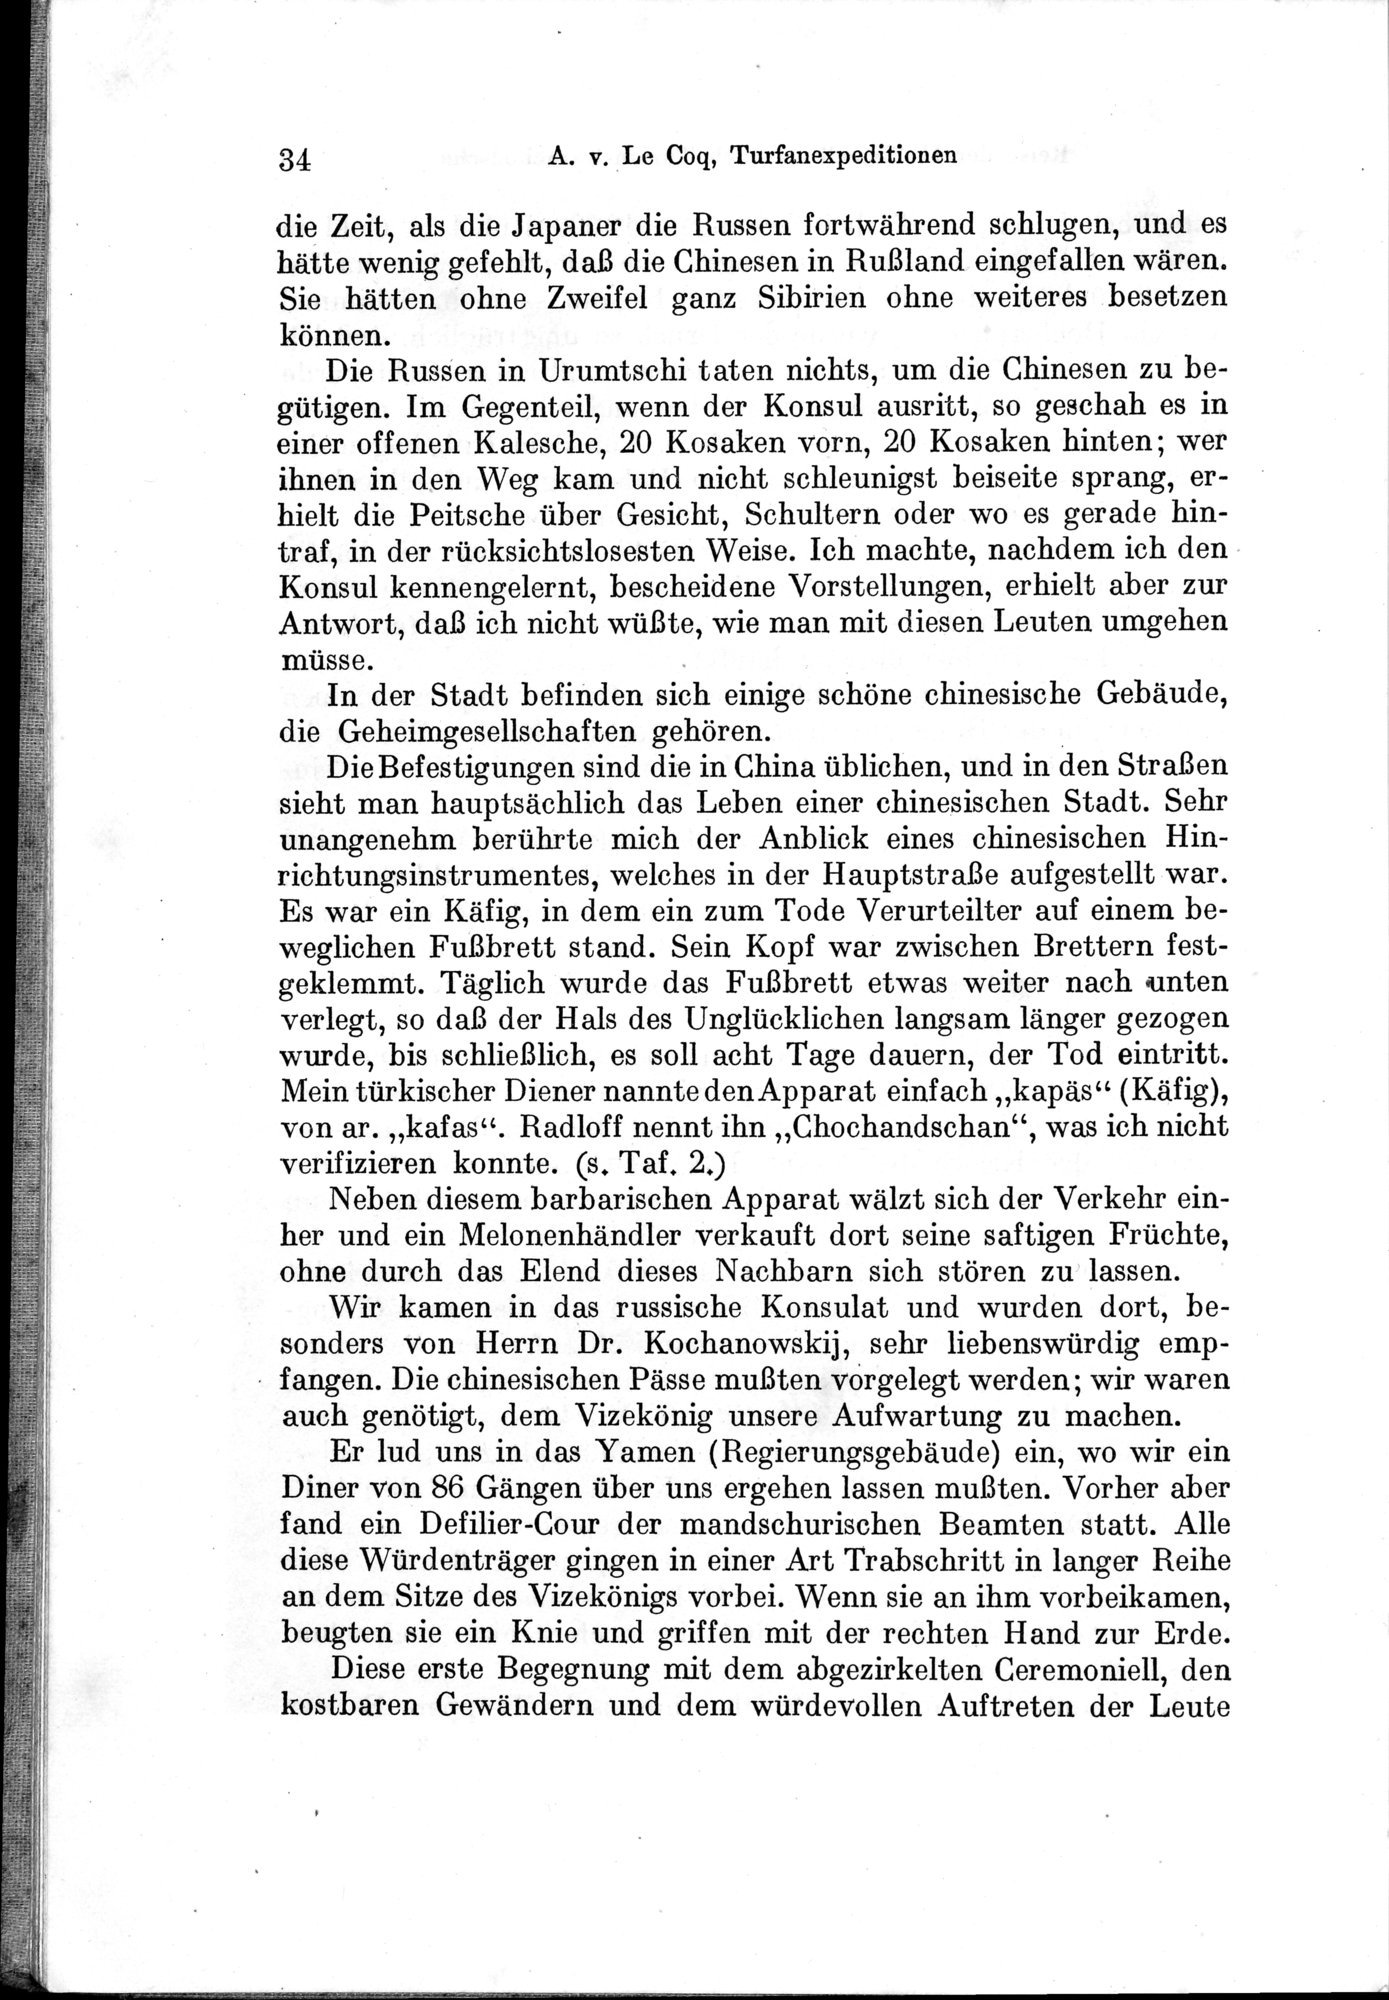 Auf Hellas Spuren in Ostturkistan : vol.1 / Page 56 (Grayscale High Resolution Image)